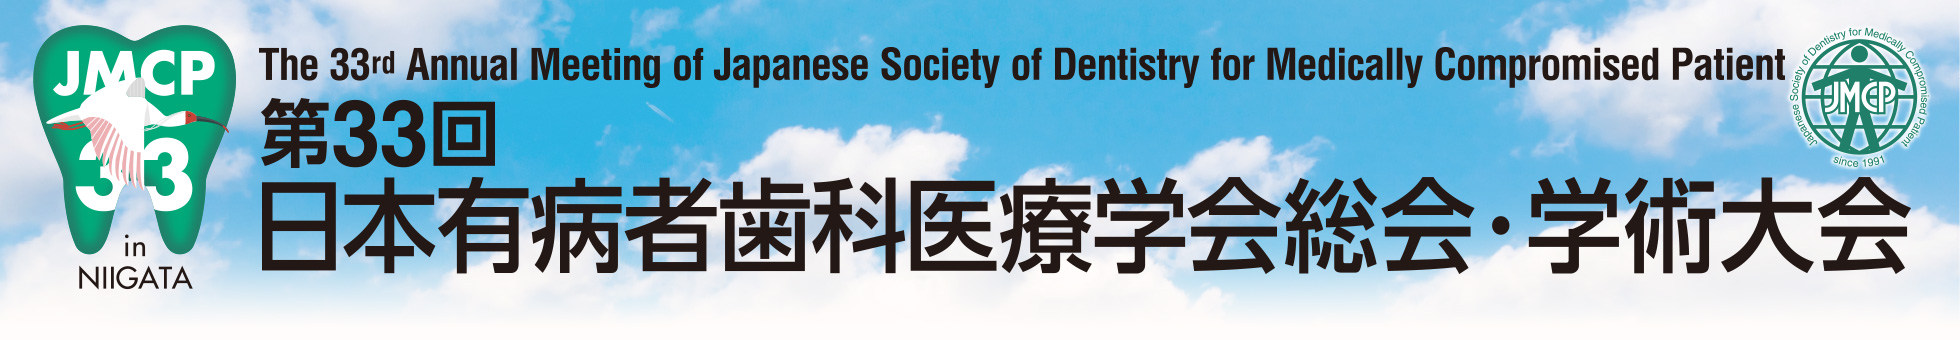 第33回日本有病者歯科医療学会総会・学術大会